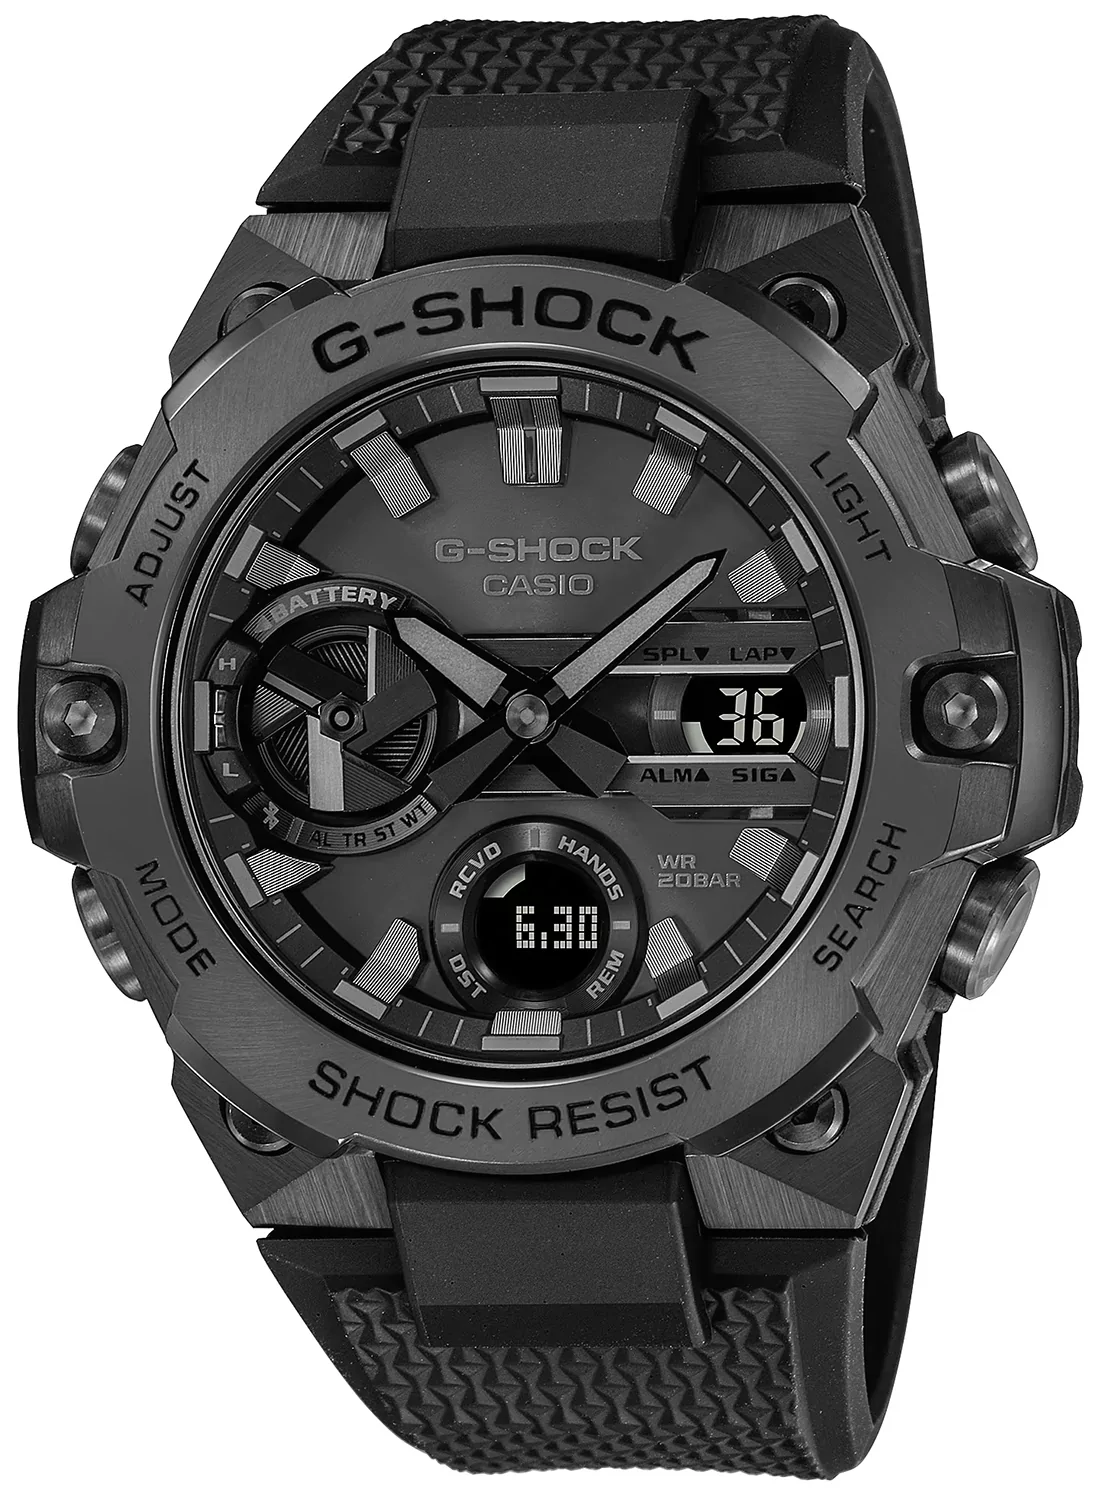 Zegarek G-SHOCK GST-B400BB-1AER G-STEEL TOUGH SOLAR - Natychmiastowa WYSYŁKA 0zł (DHL DPD INPOST) | Grawer 1zł | Zwrot 100 dni